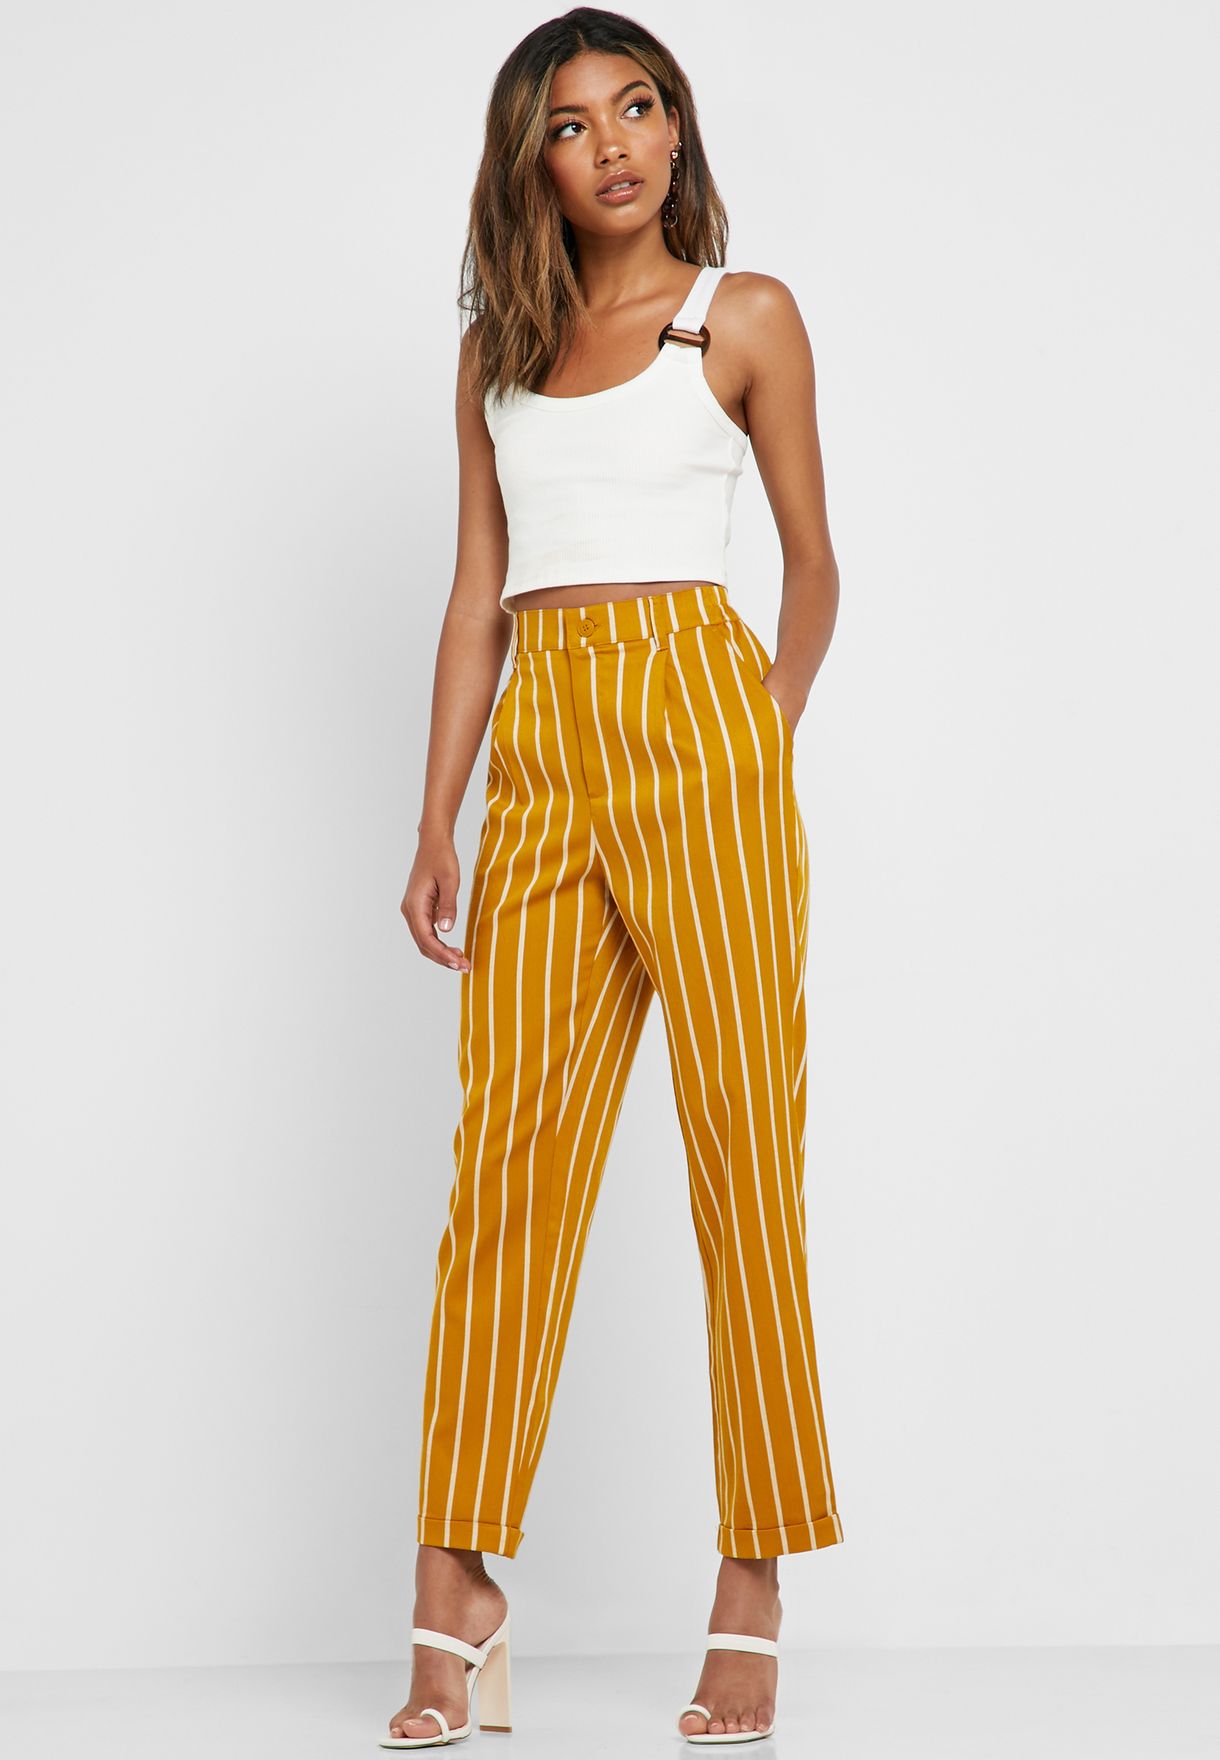 striped yellow pants